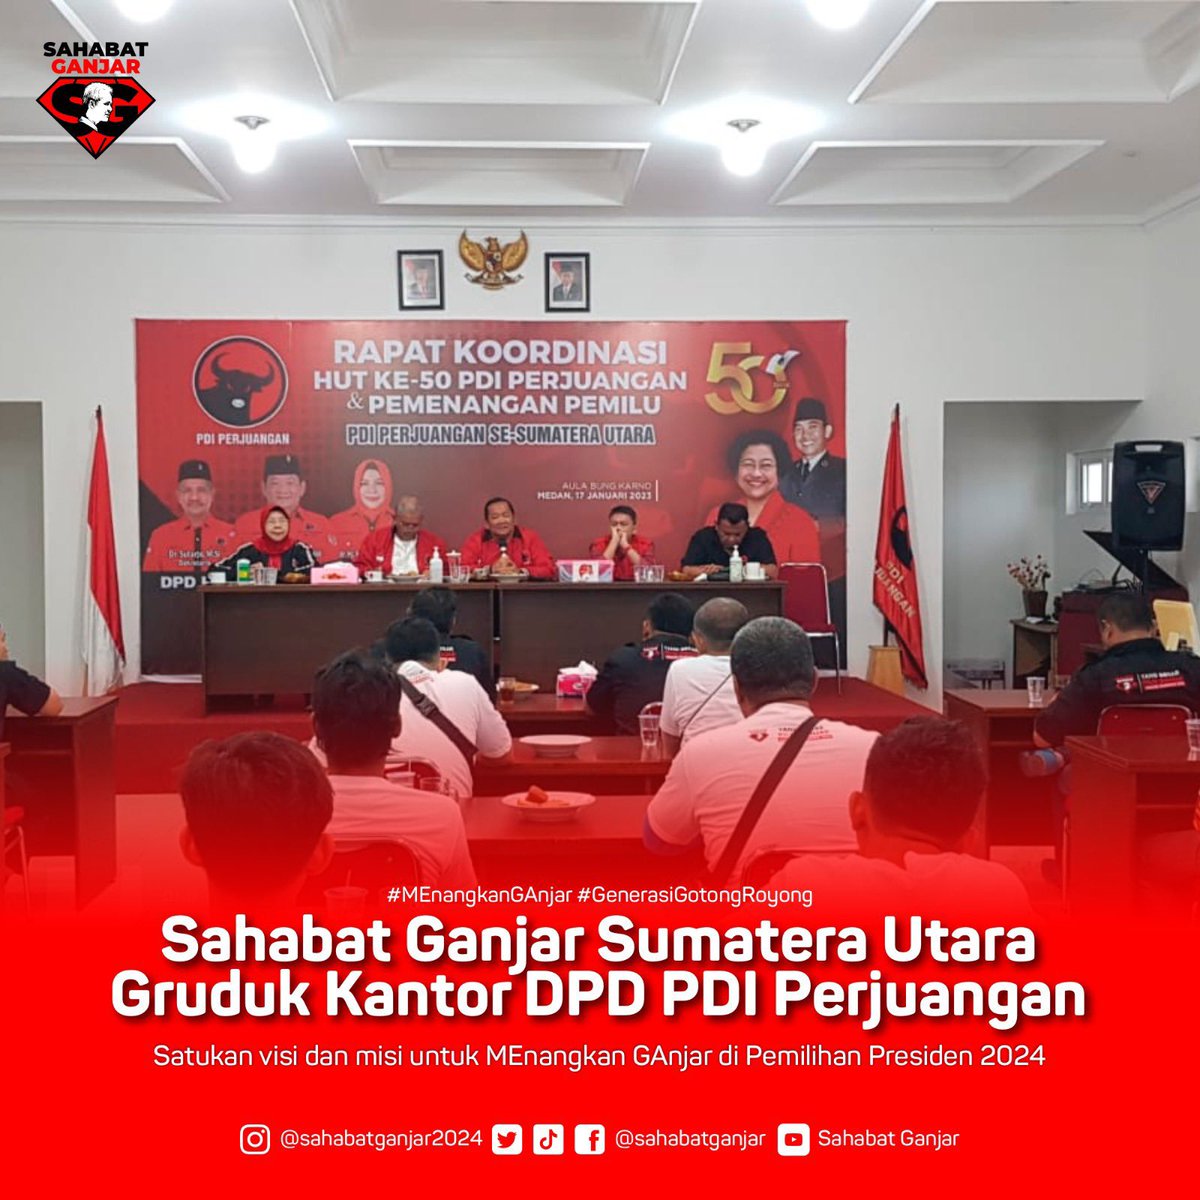 Sahabat Ganjar di Provinsi Sumatera Utara melakukan kunjungan ke Kantor DPD PDI-P Sumatera Utara dalam rangka jalin koordinasi dan kerja sama untuk MEnangkan GAnjar di tahun 2024.

#GanjarPranowo
#SahabatGanjar
#MEnangkanGAnjar
#GenerasiGotongRoyong
#SumateraUtara